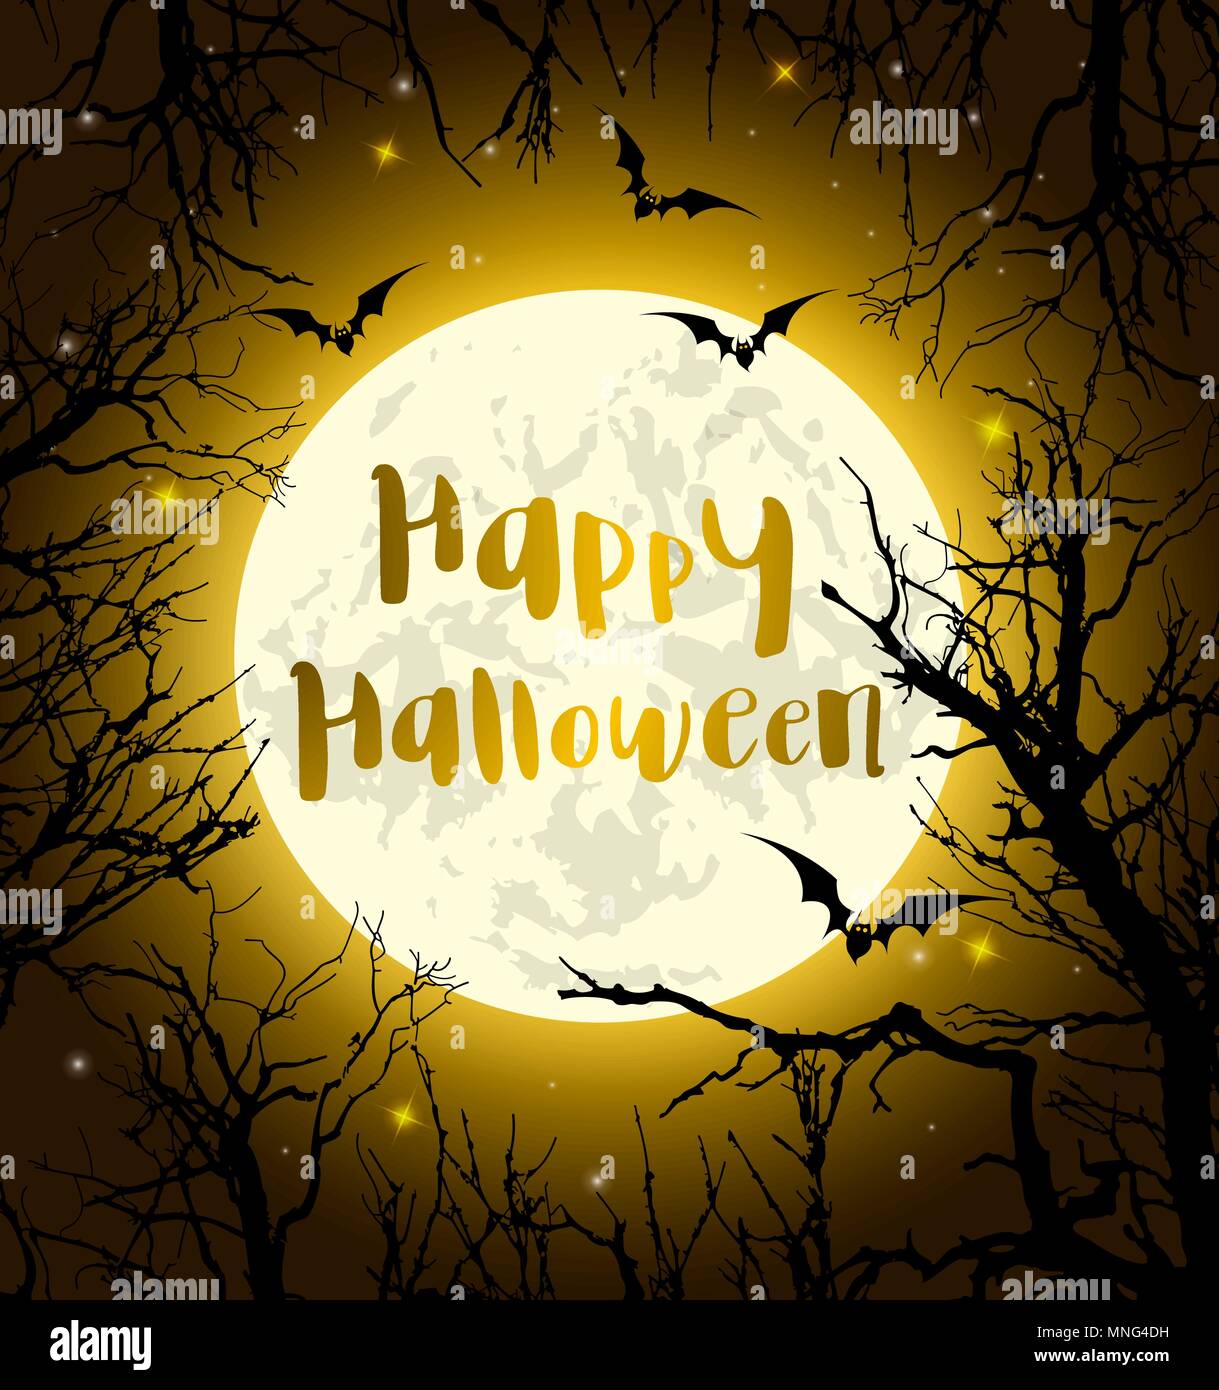 Halloween biglietto di auguri con la luna piena, pipistrelli e albero. Illustrazione Vettoriale Illustrazione Vettoriale